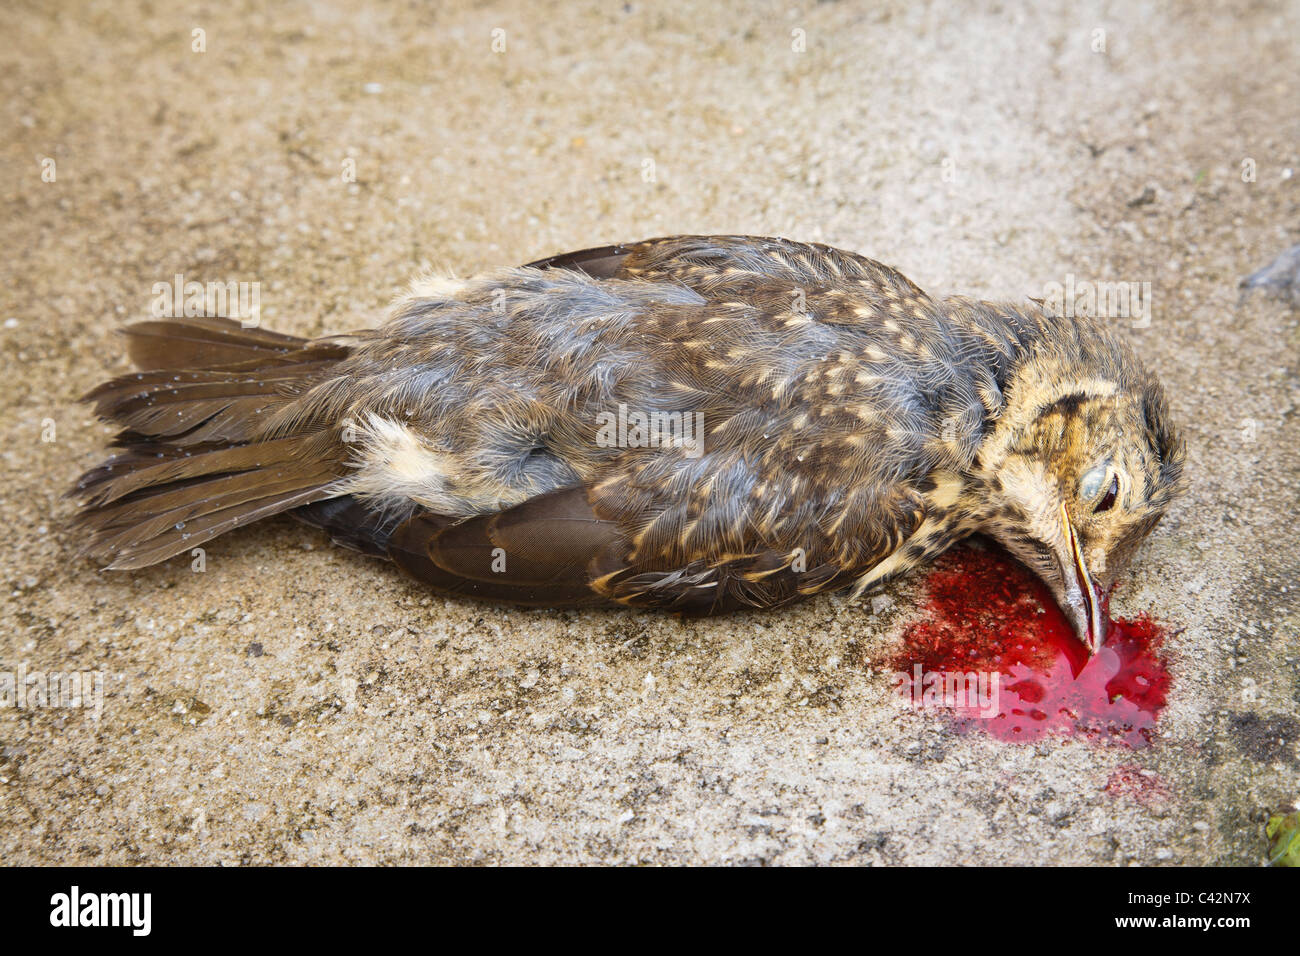 Tote Kinder vogel Blutungen aus einem Verwundeten getötet nach versehentlich Fliegen in einem Fenster. Großbritannien, Großbritannien Stockfoto